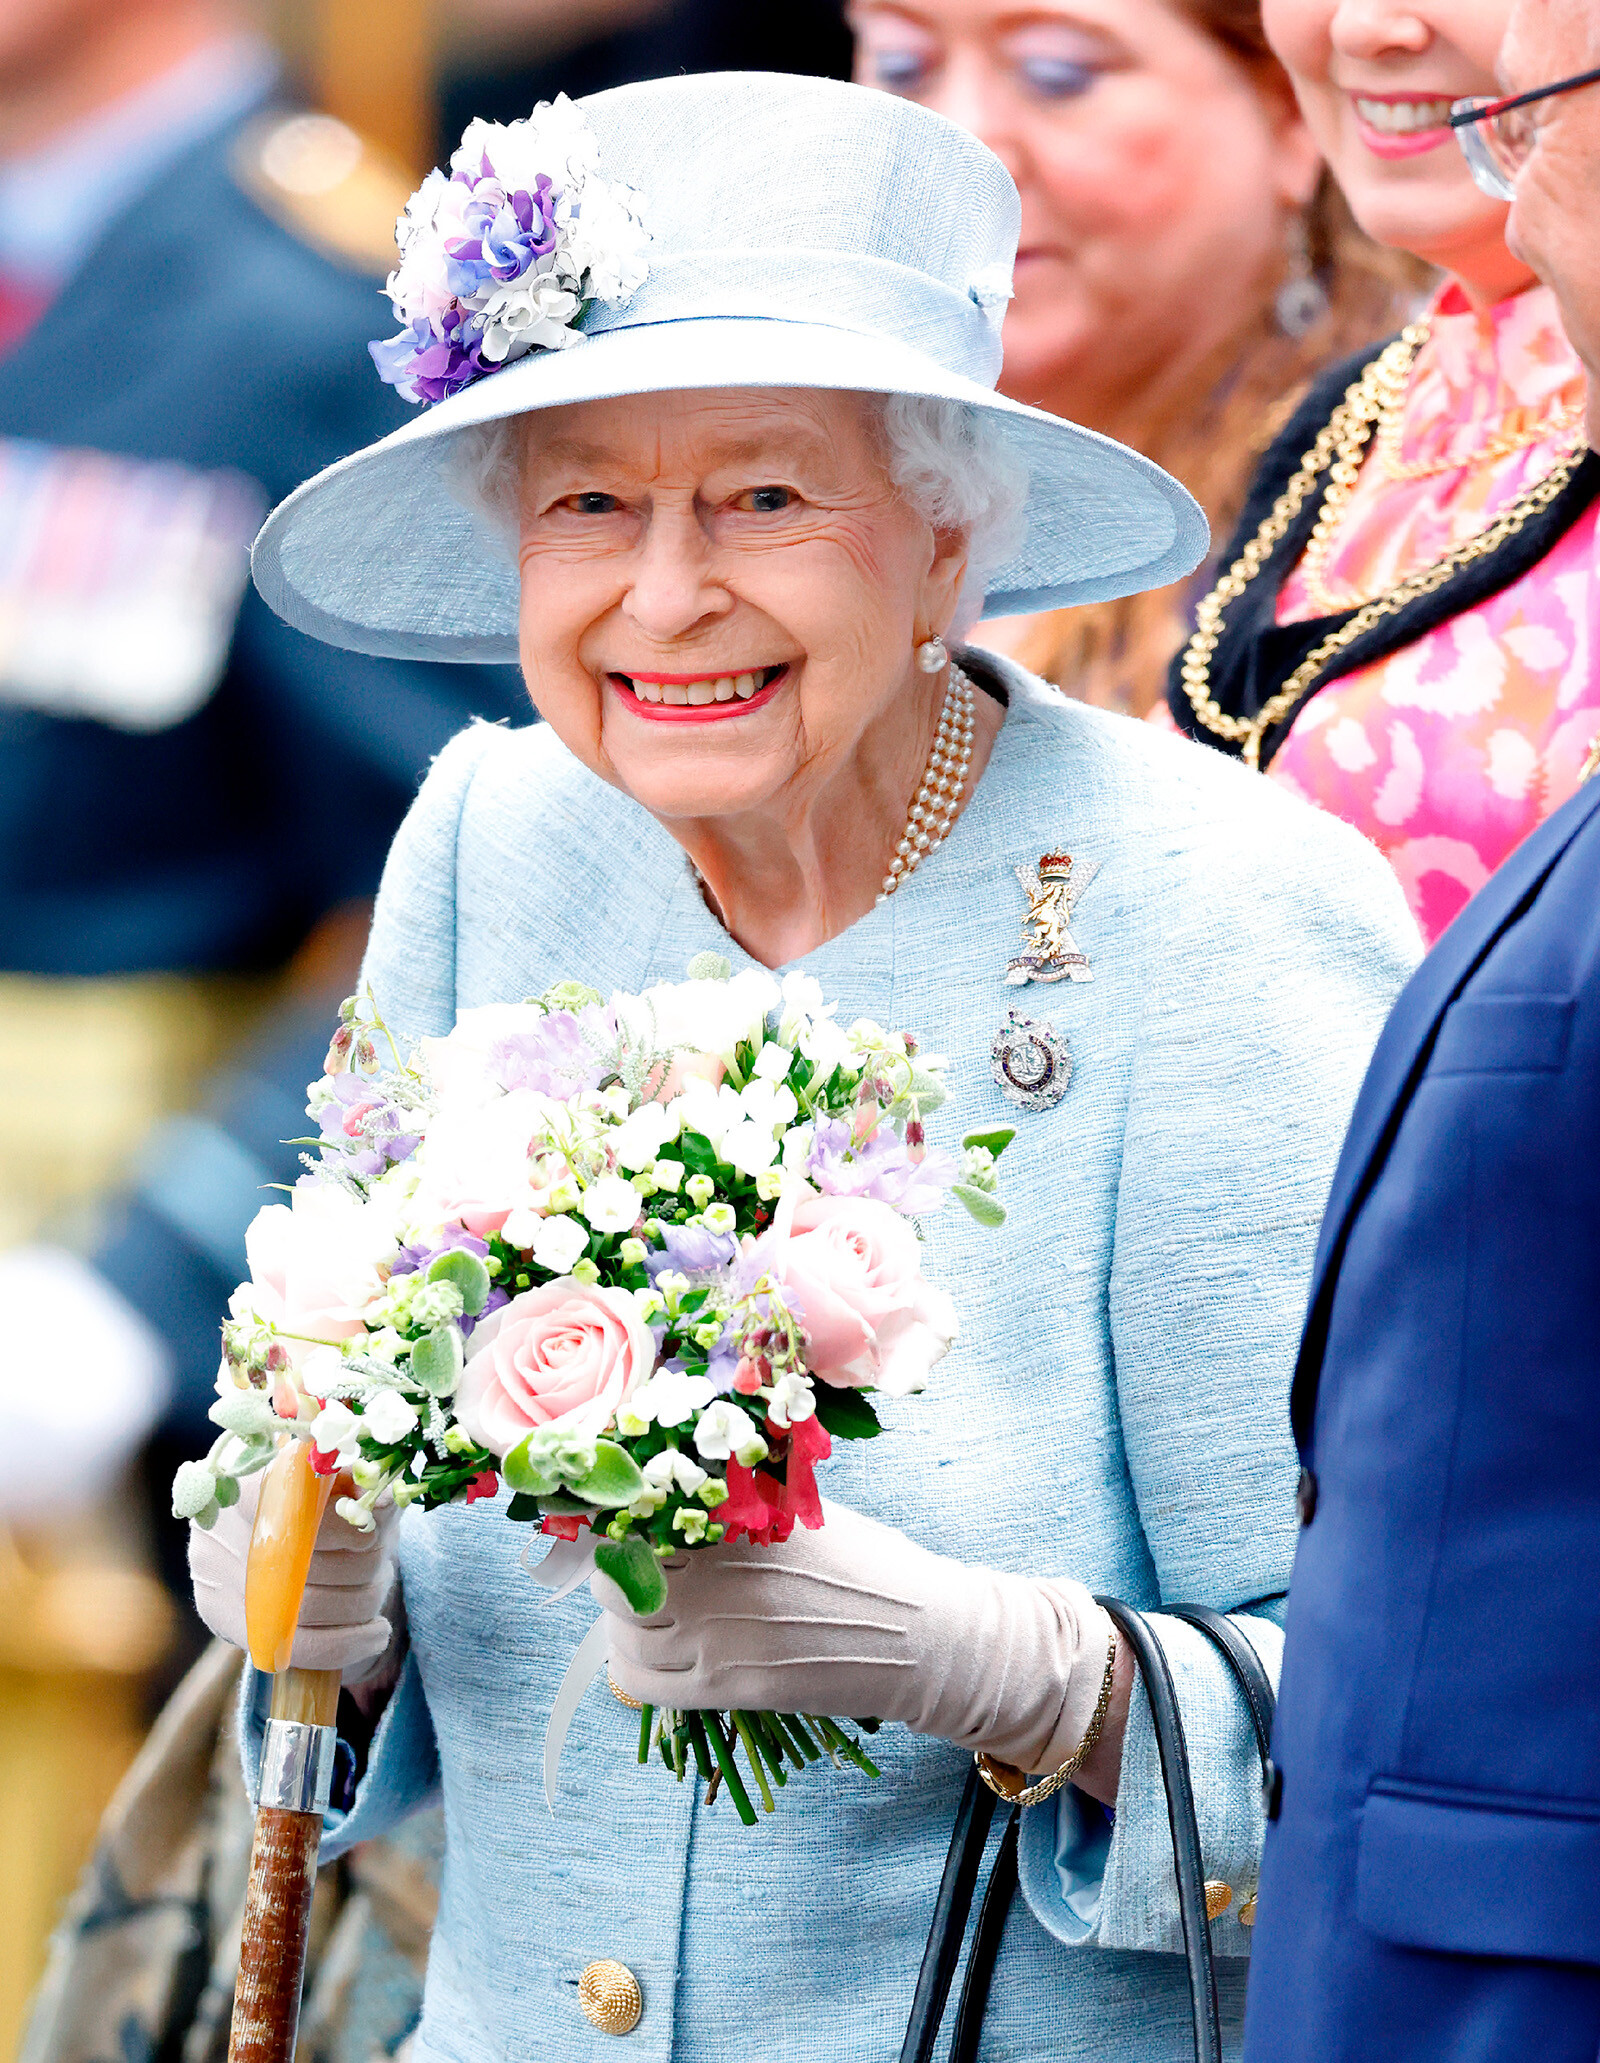 Бывший дворецкий рассказал, как семья отметит день рождения покойной королевы Елизаветы II